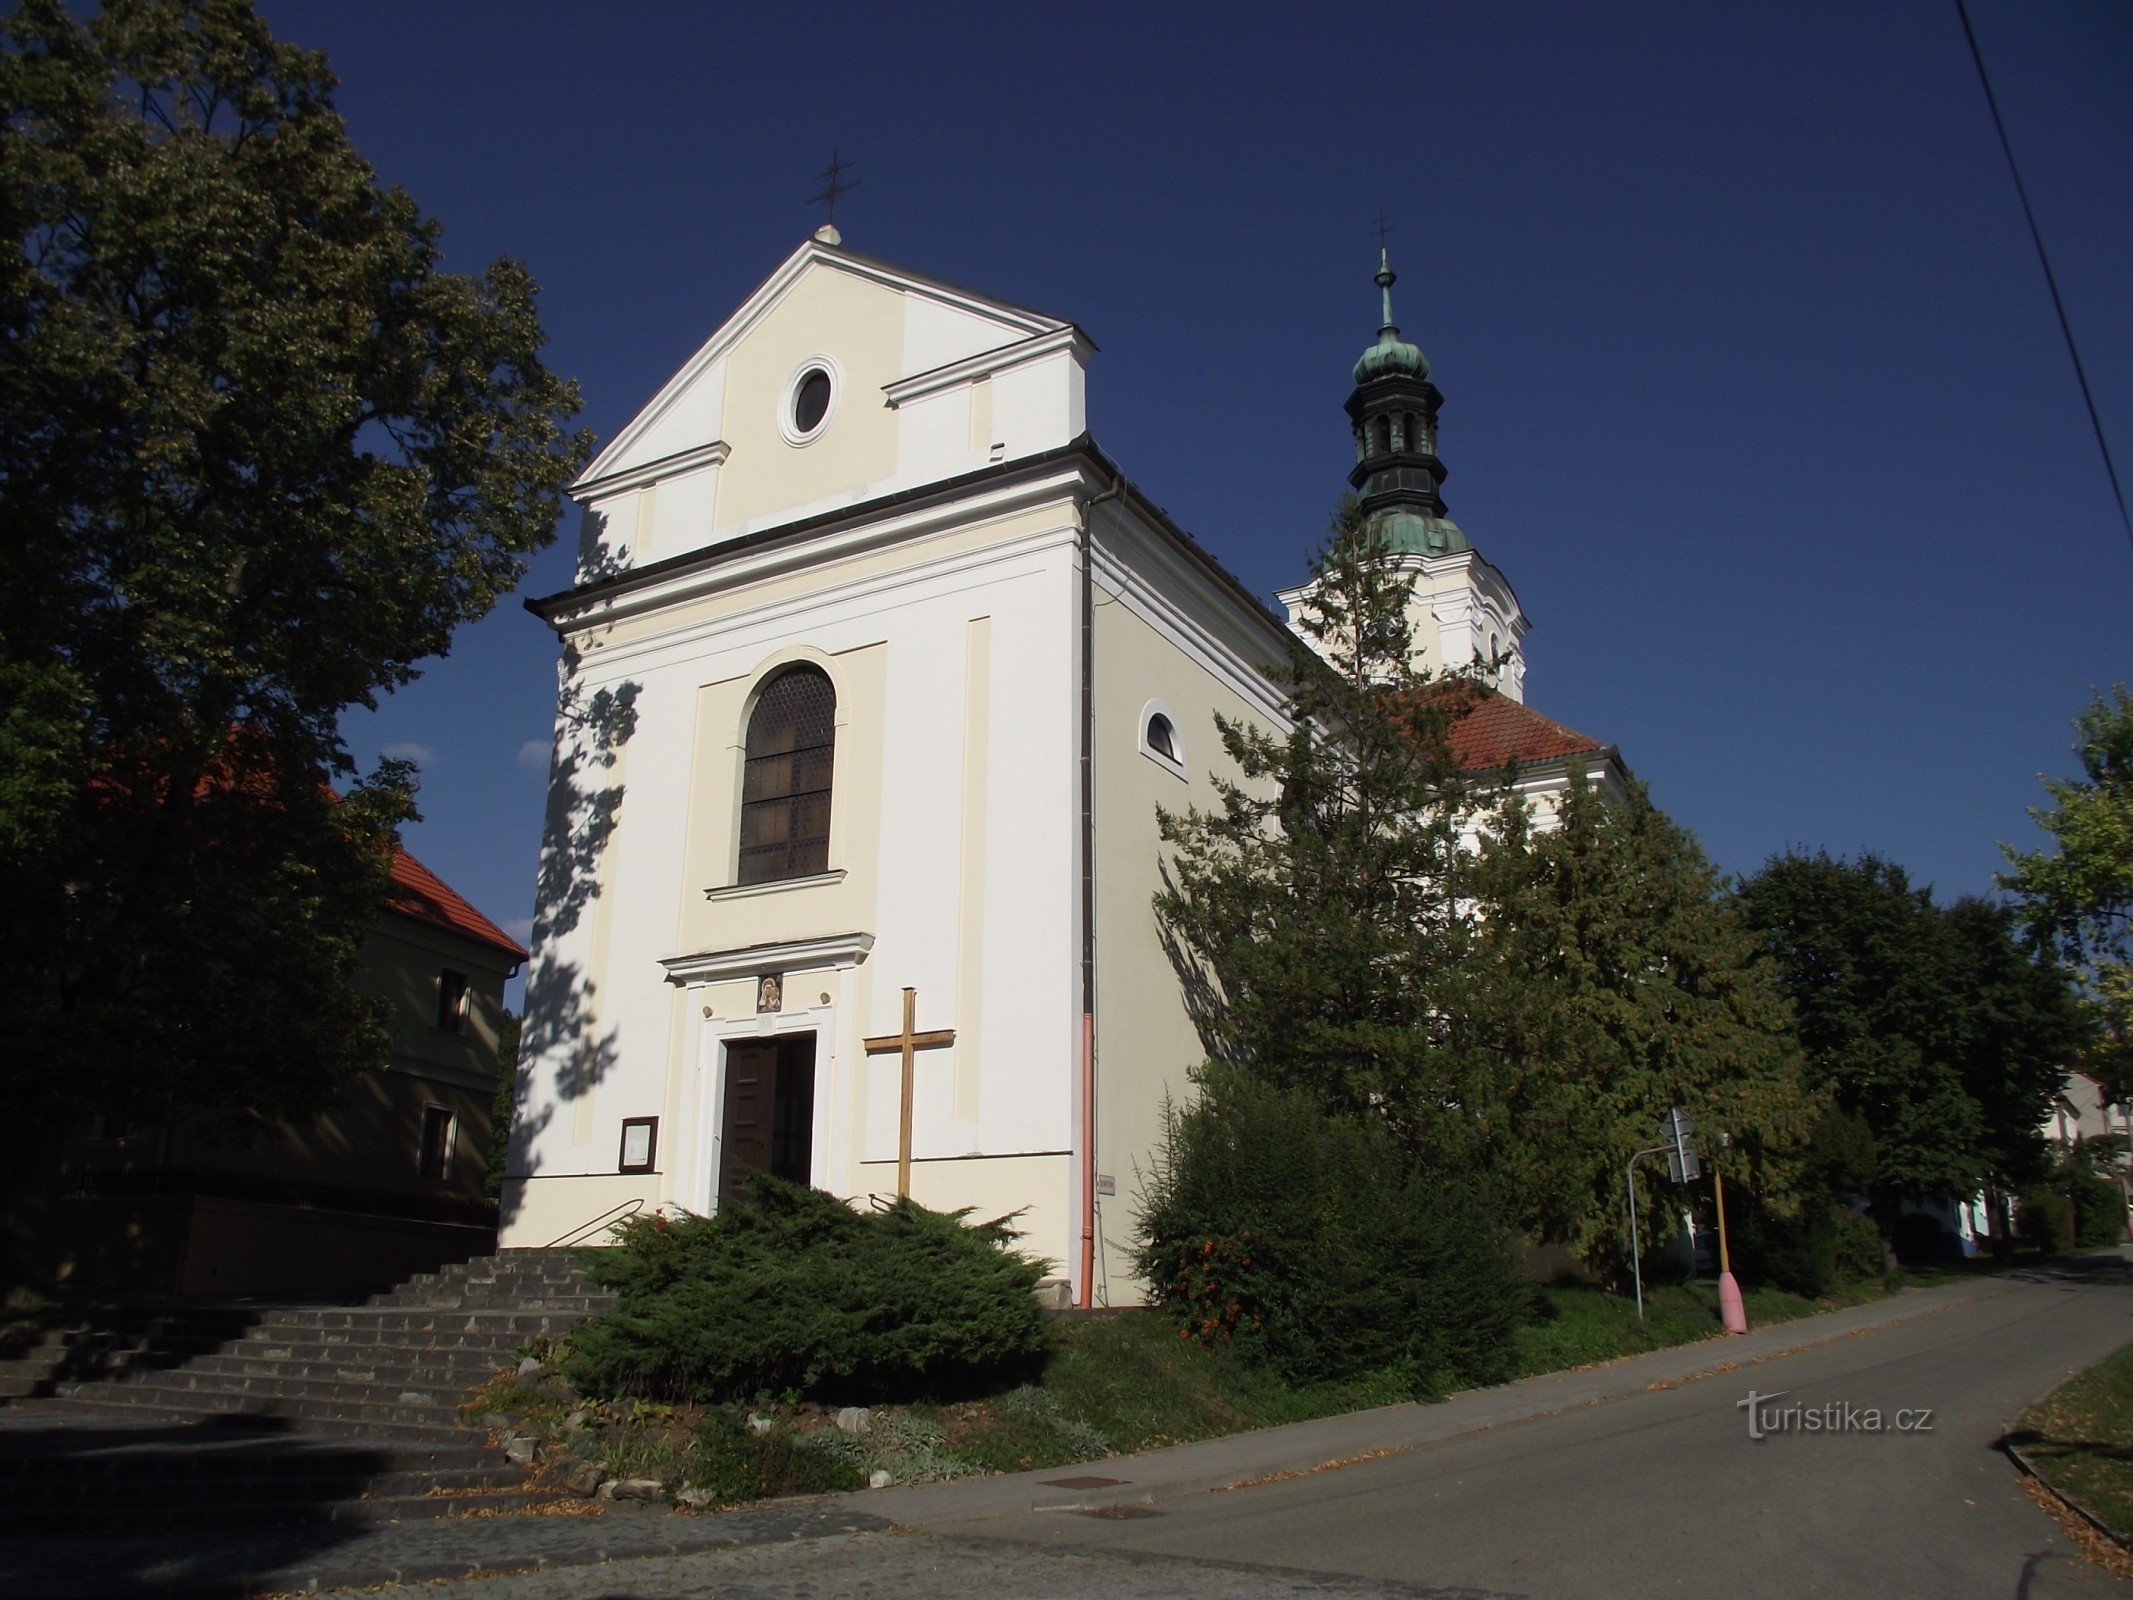 Ždánice – Church of the Assumption of the Virgin Mary